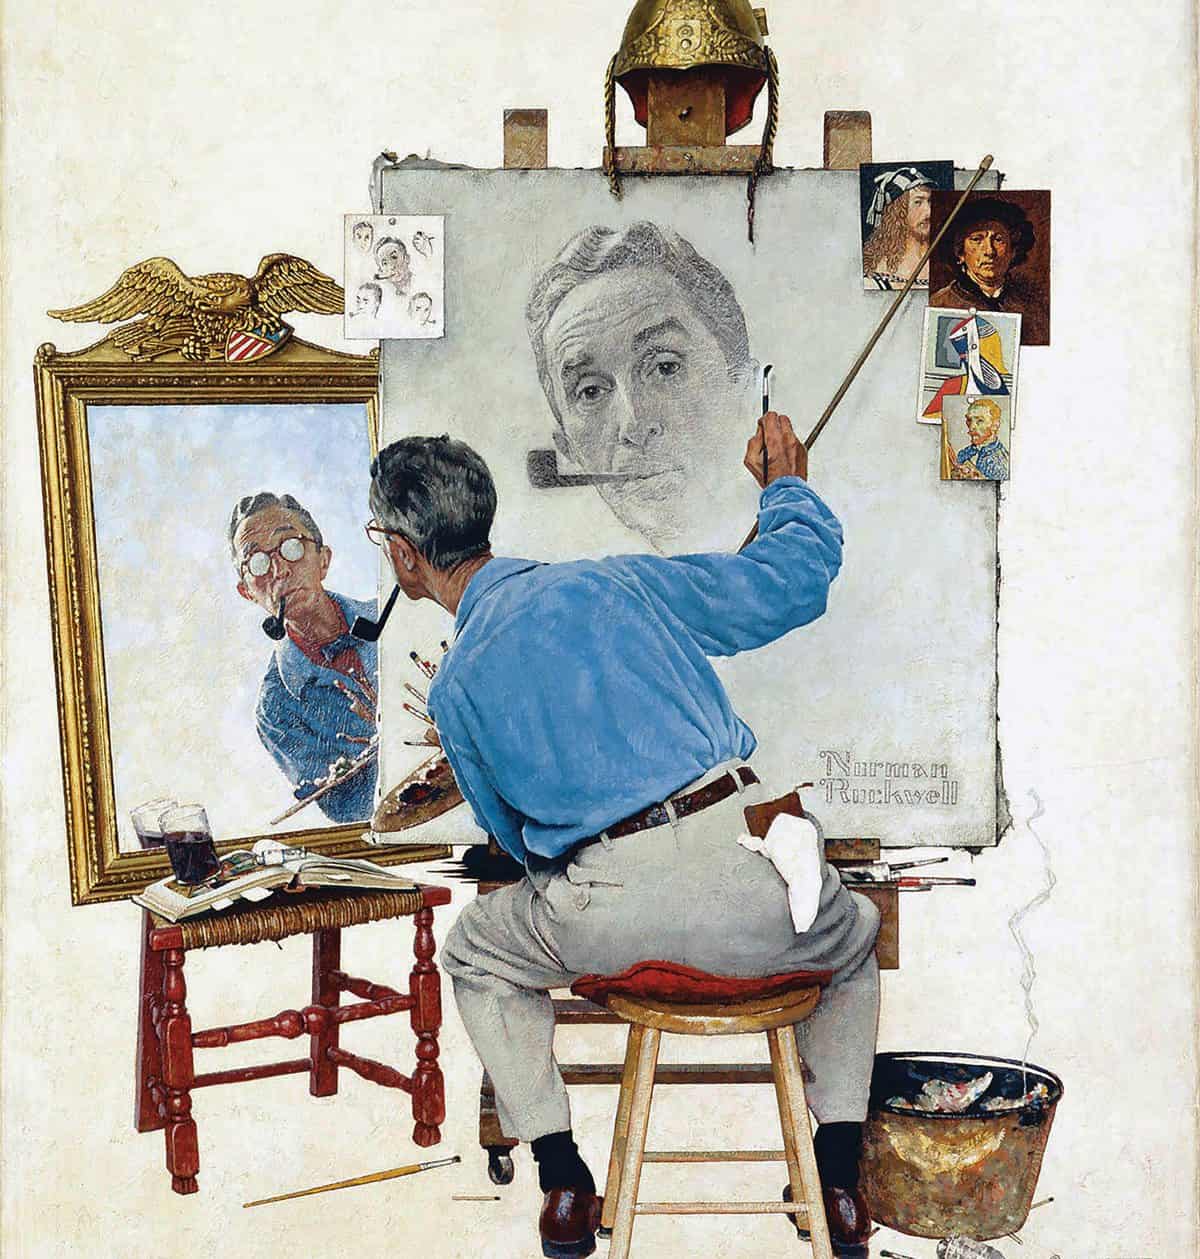 Norman Rockwell's "Triple Self-Portrait"